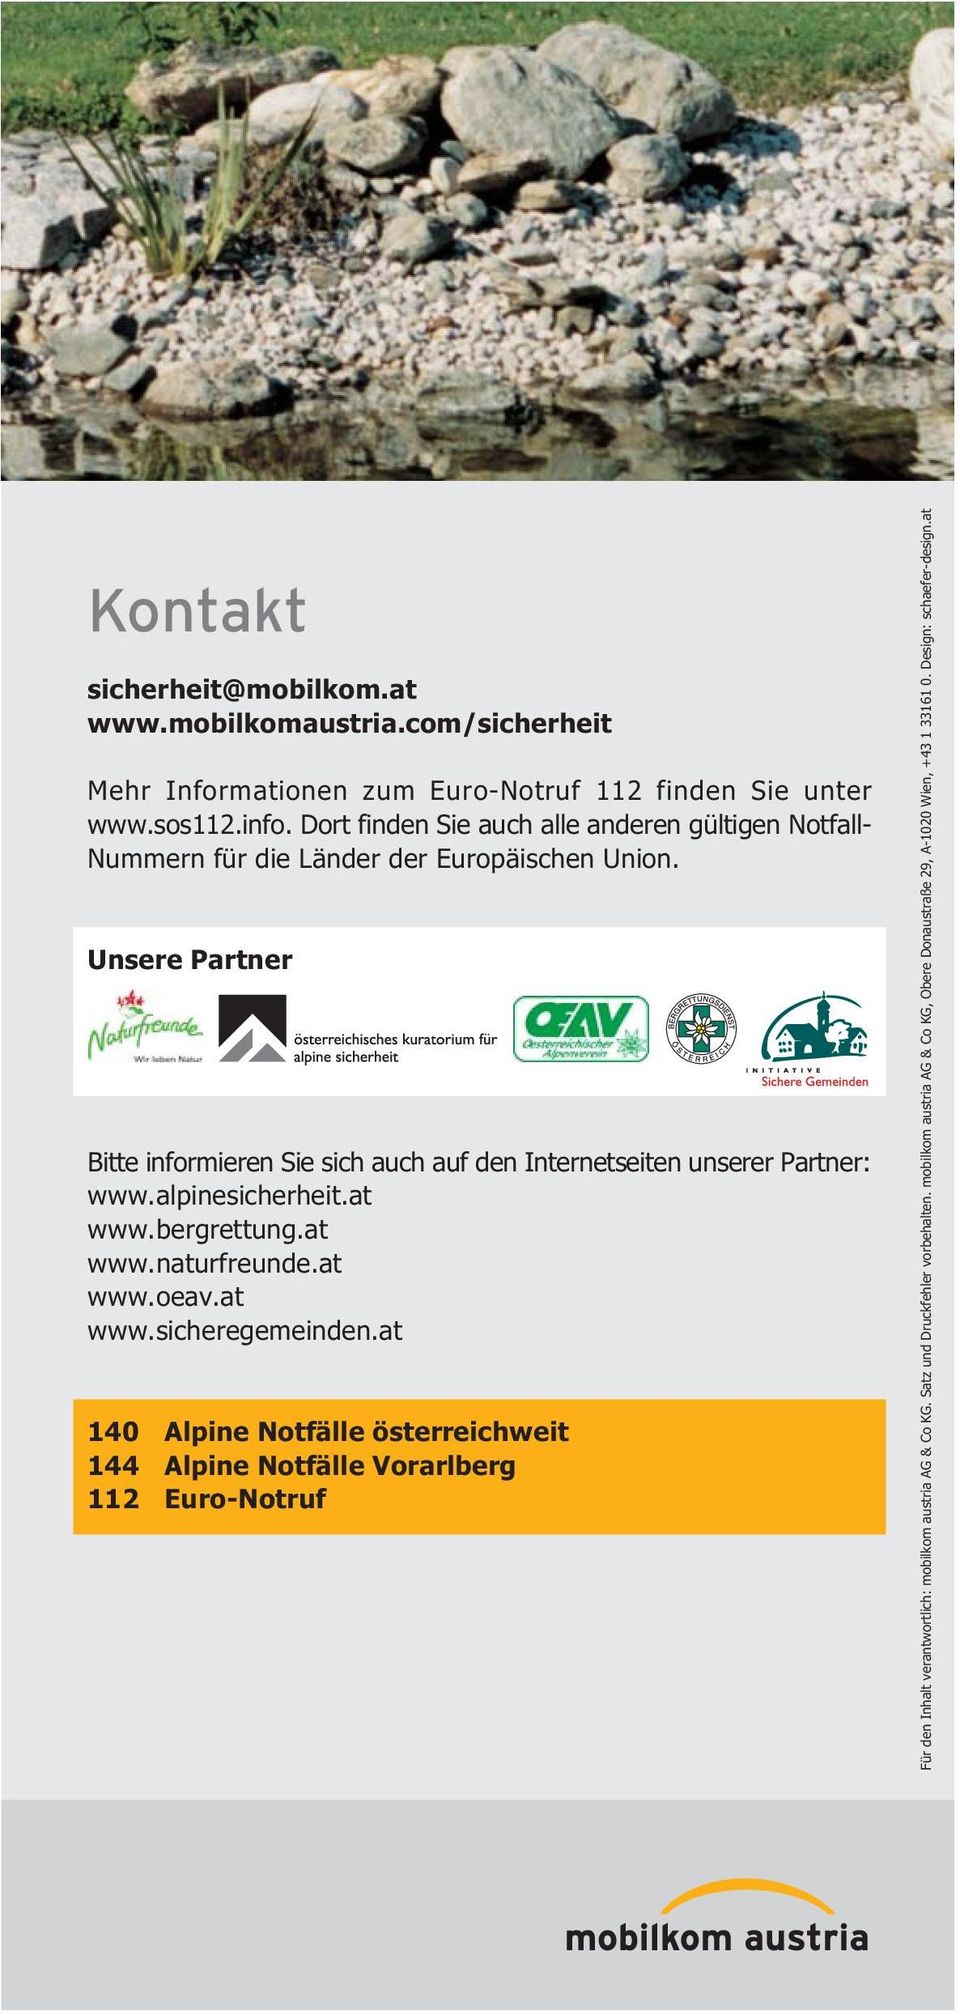 Unsere Partner Bitte informieren Sie sich auch auf den Internetseiten unserer Partner: www.alpinesicherheit.at www.bergrettung.at www.naturfreunde.at www.oeav.at www.sicheregemeinden.